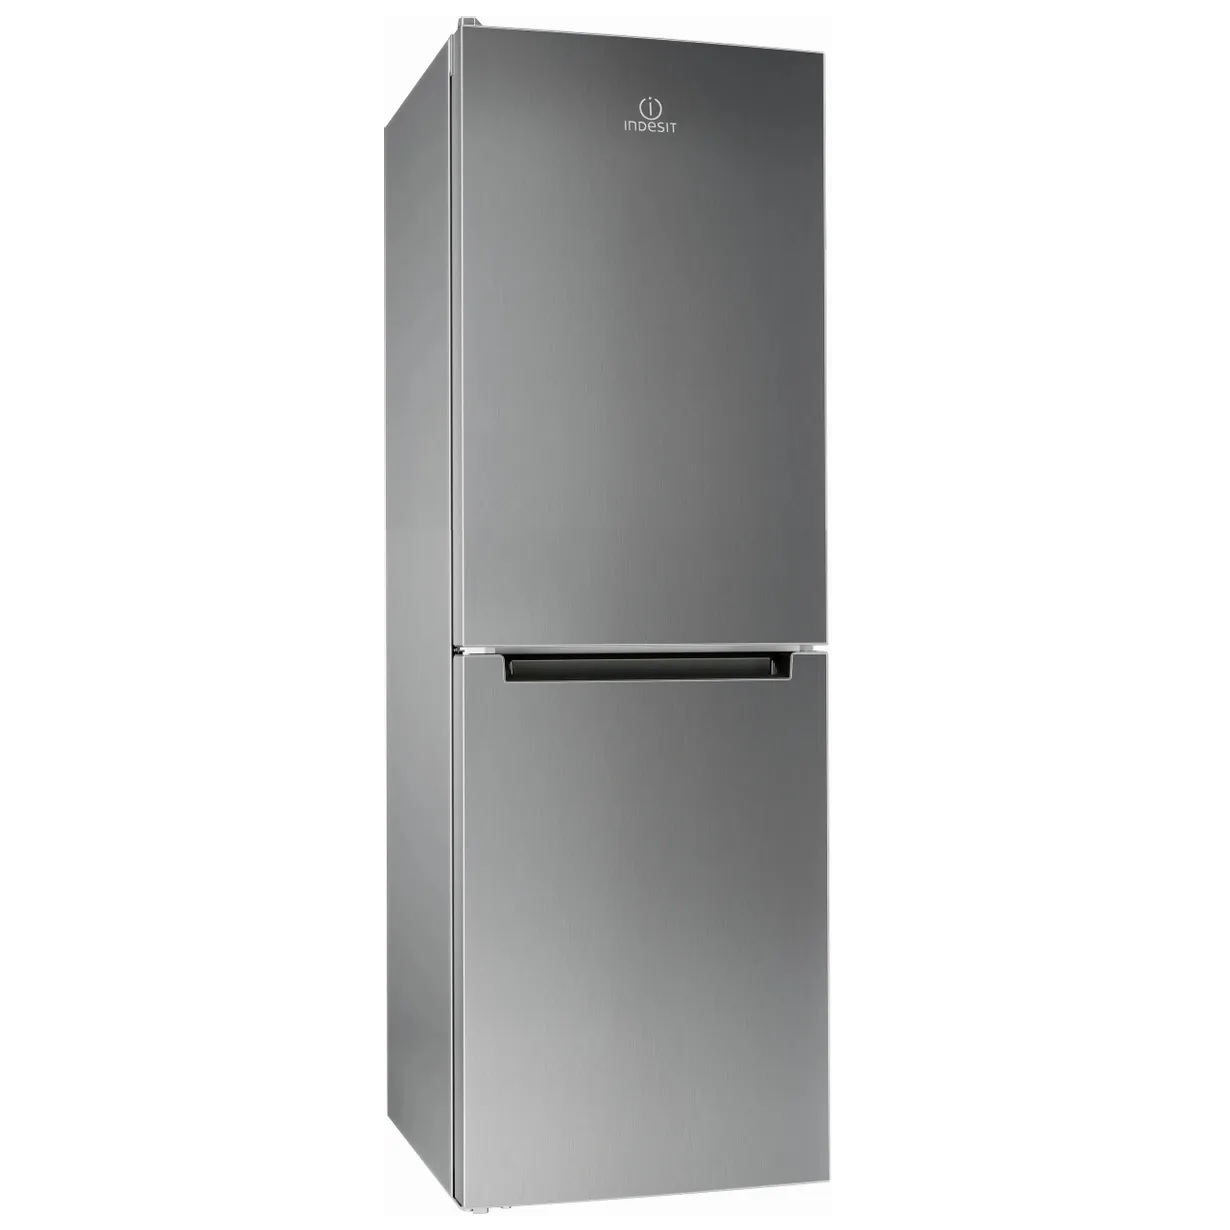 Холодильник Indesit DS 4160 S серебристый двухкамерный холодильник indesit ds 4160 e